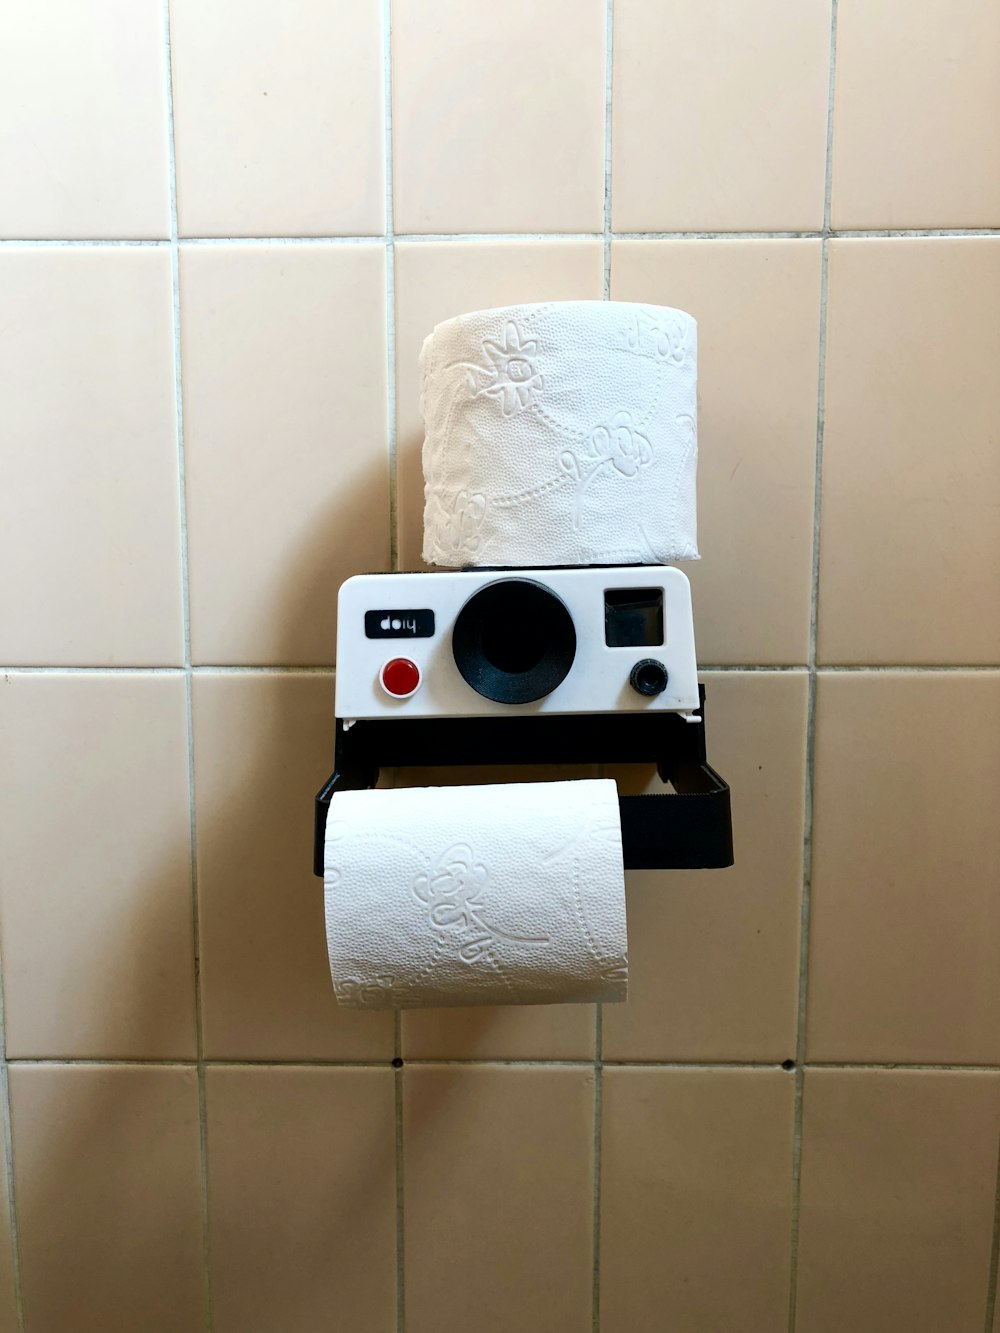 white toilet paper roll on black holder